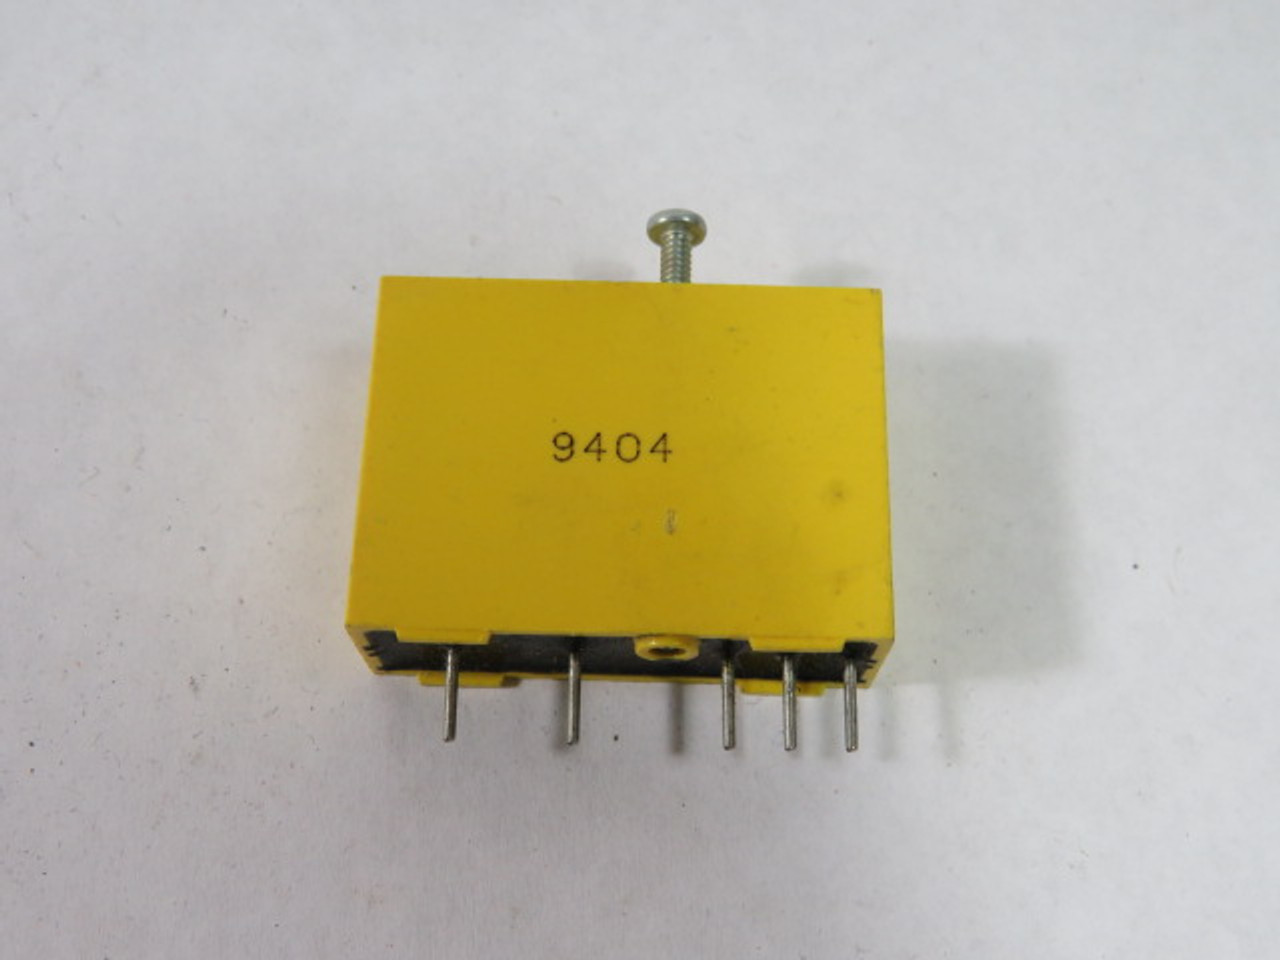 Grayhill 70-IAC5 AC Input Module Input 5mA 120V Output 10mA 5VDC USED